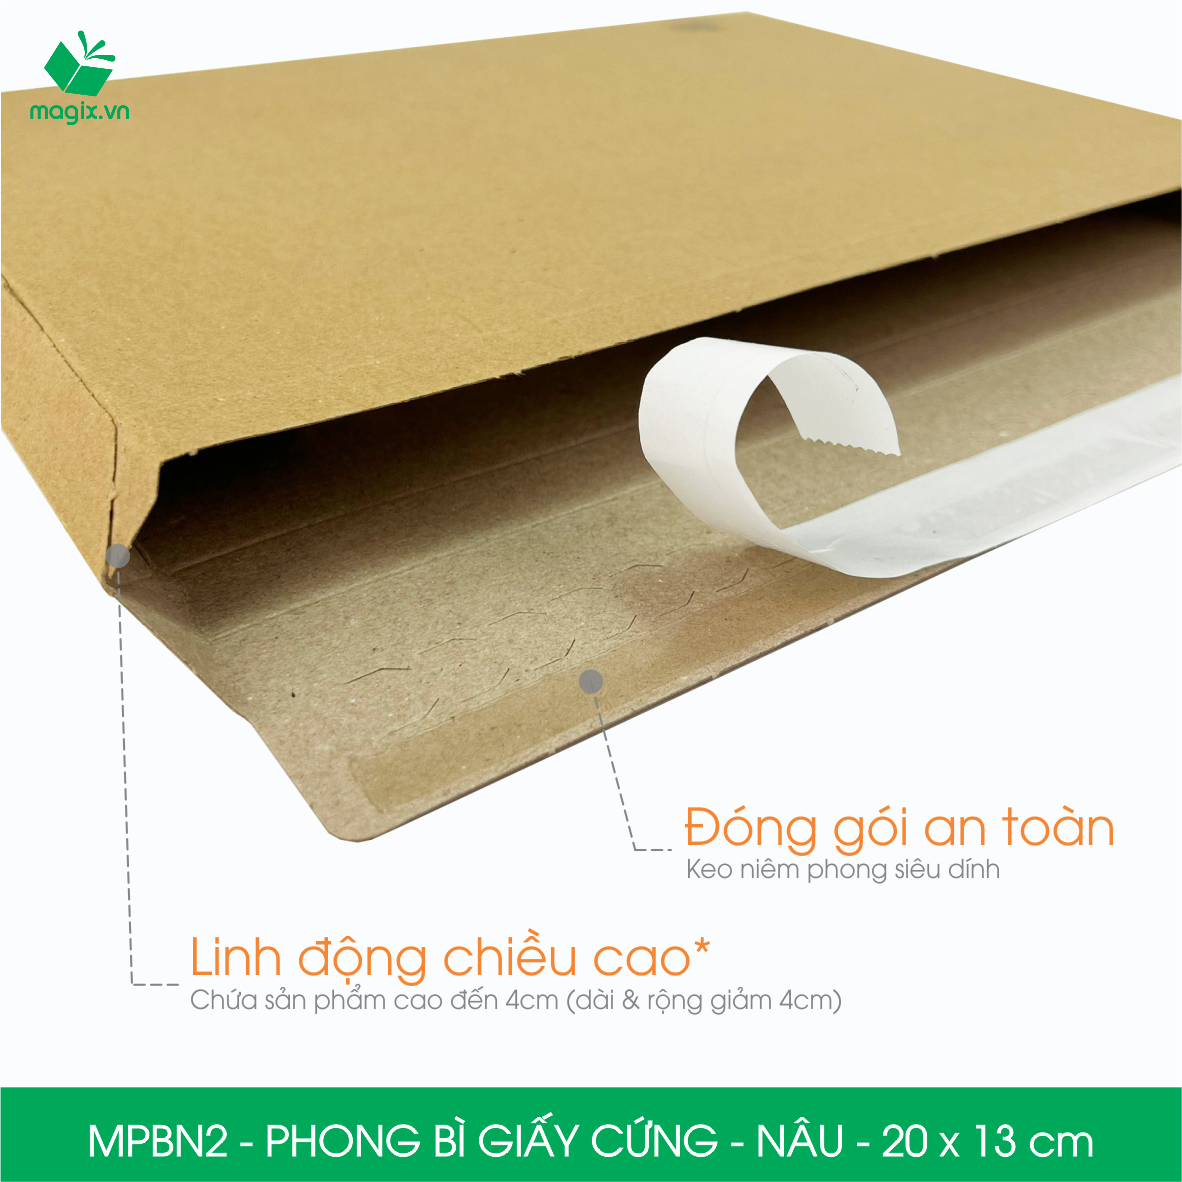 MPBN2 - 20x13 cm - Combo 60 phong bì giấy cứng đóng hàng màu nâu thay thế túi gói hàng